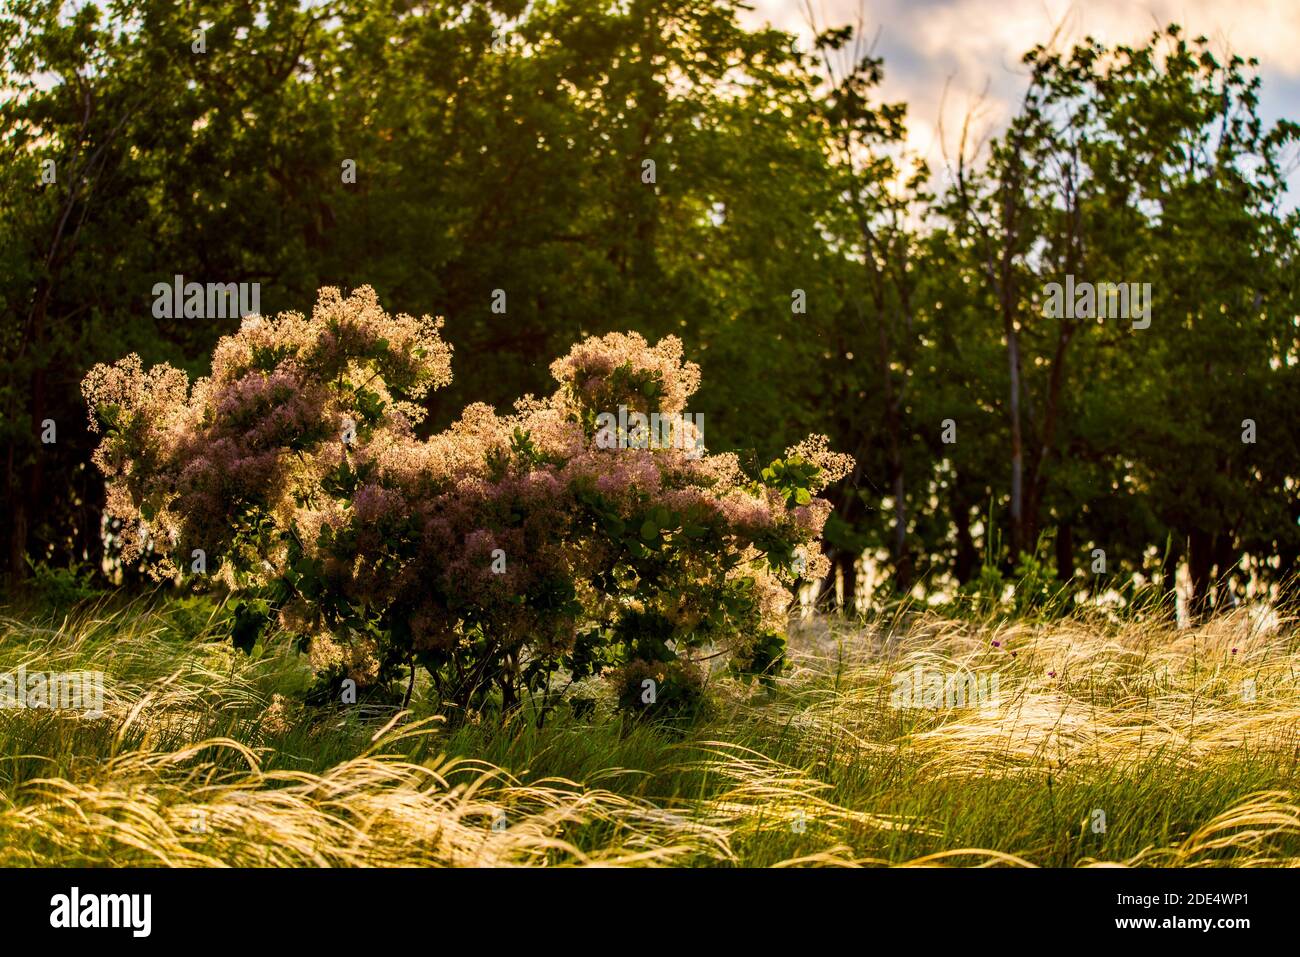 Europäische Smoketree blüht. Cotinus coggygria oder rhus cotinus Pflanze mit Blüte. Goldenes Sonnenlicht in der Dämmerung. Stockfoto